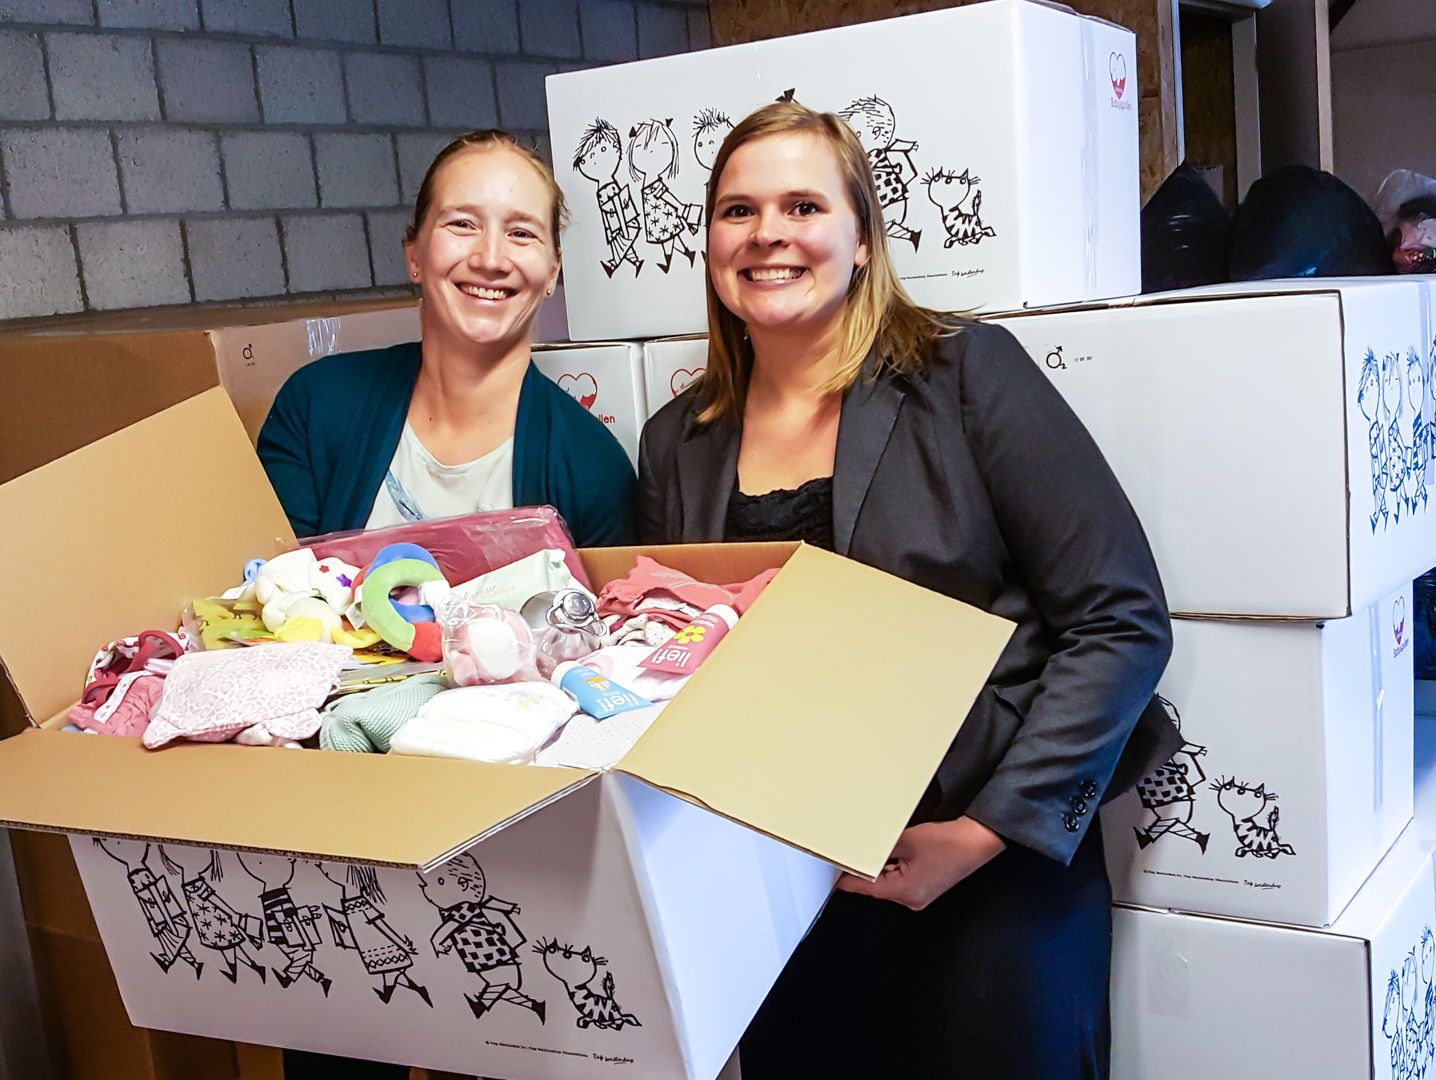 patroon heerser voor 3000ste babystartpakket voor Stichting Babyspullen - KraamZus.nl